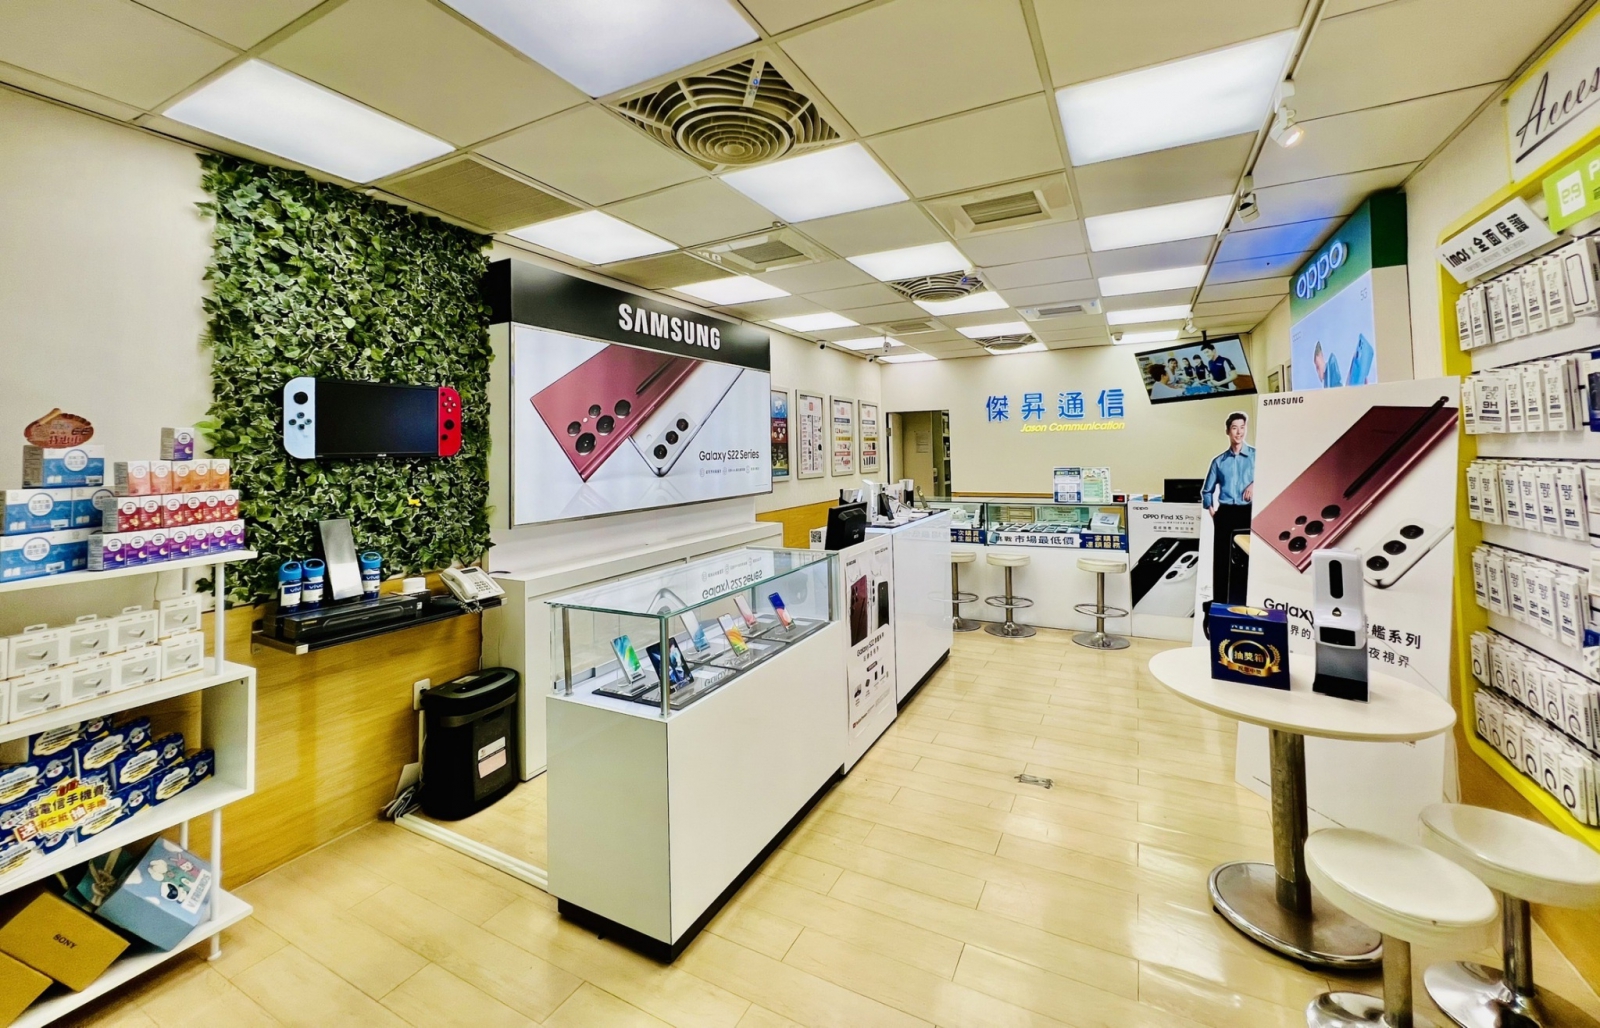 傑昇通信在1986年創立，是一家穩定經營超過35年的手機通訊行，直到現在已展店破100家直營門市